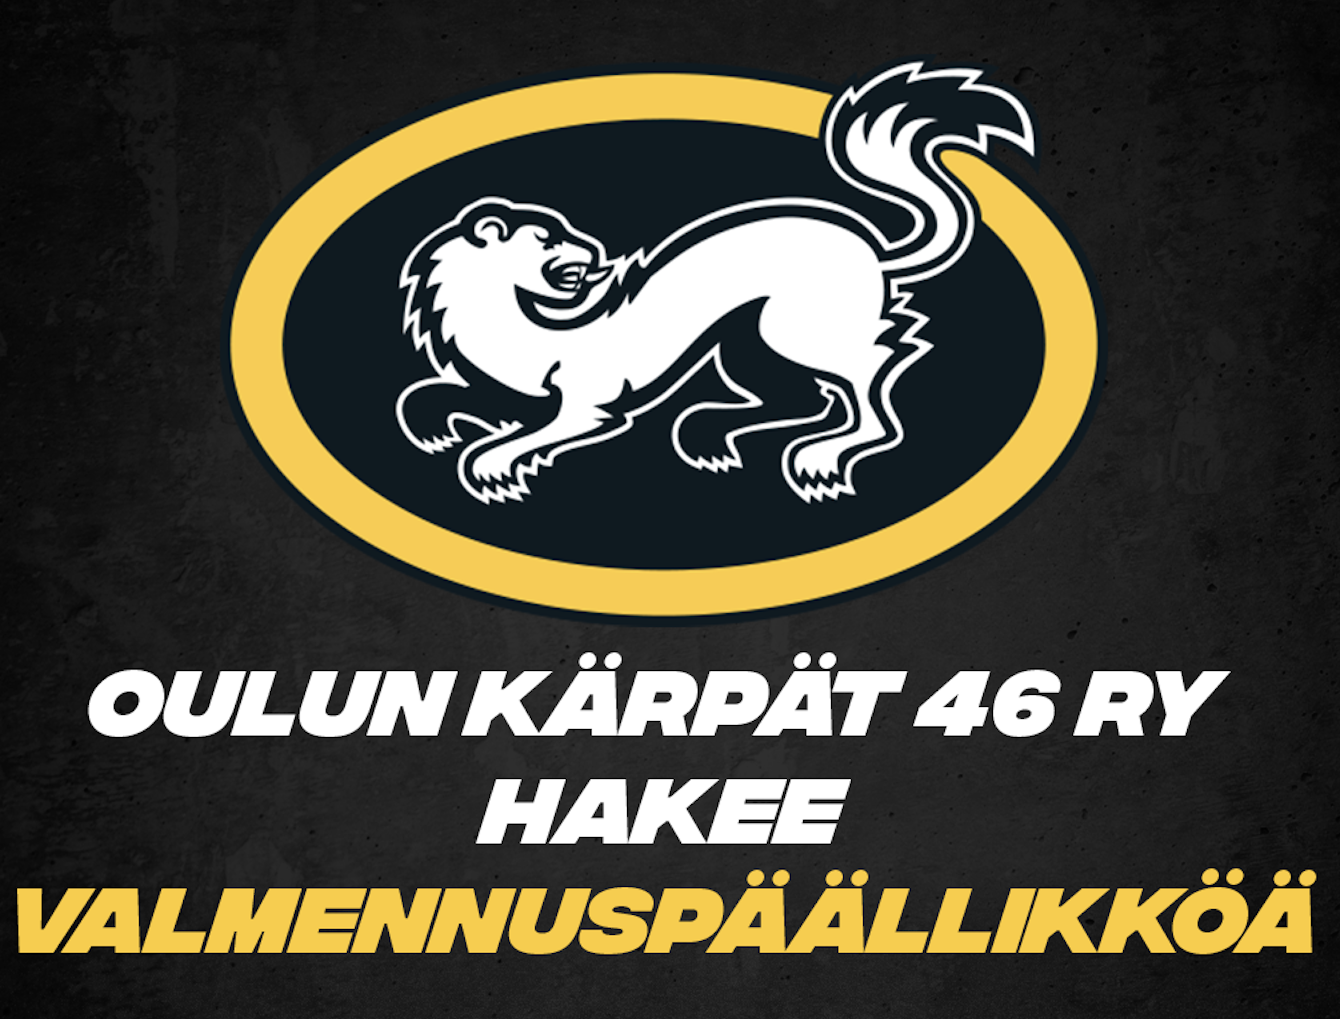 Oulun Kärpät 46 ry hakee valmennuspäällikköä 